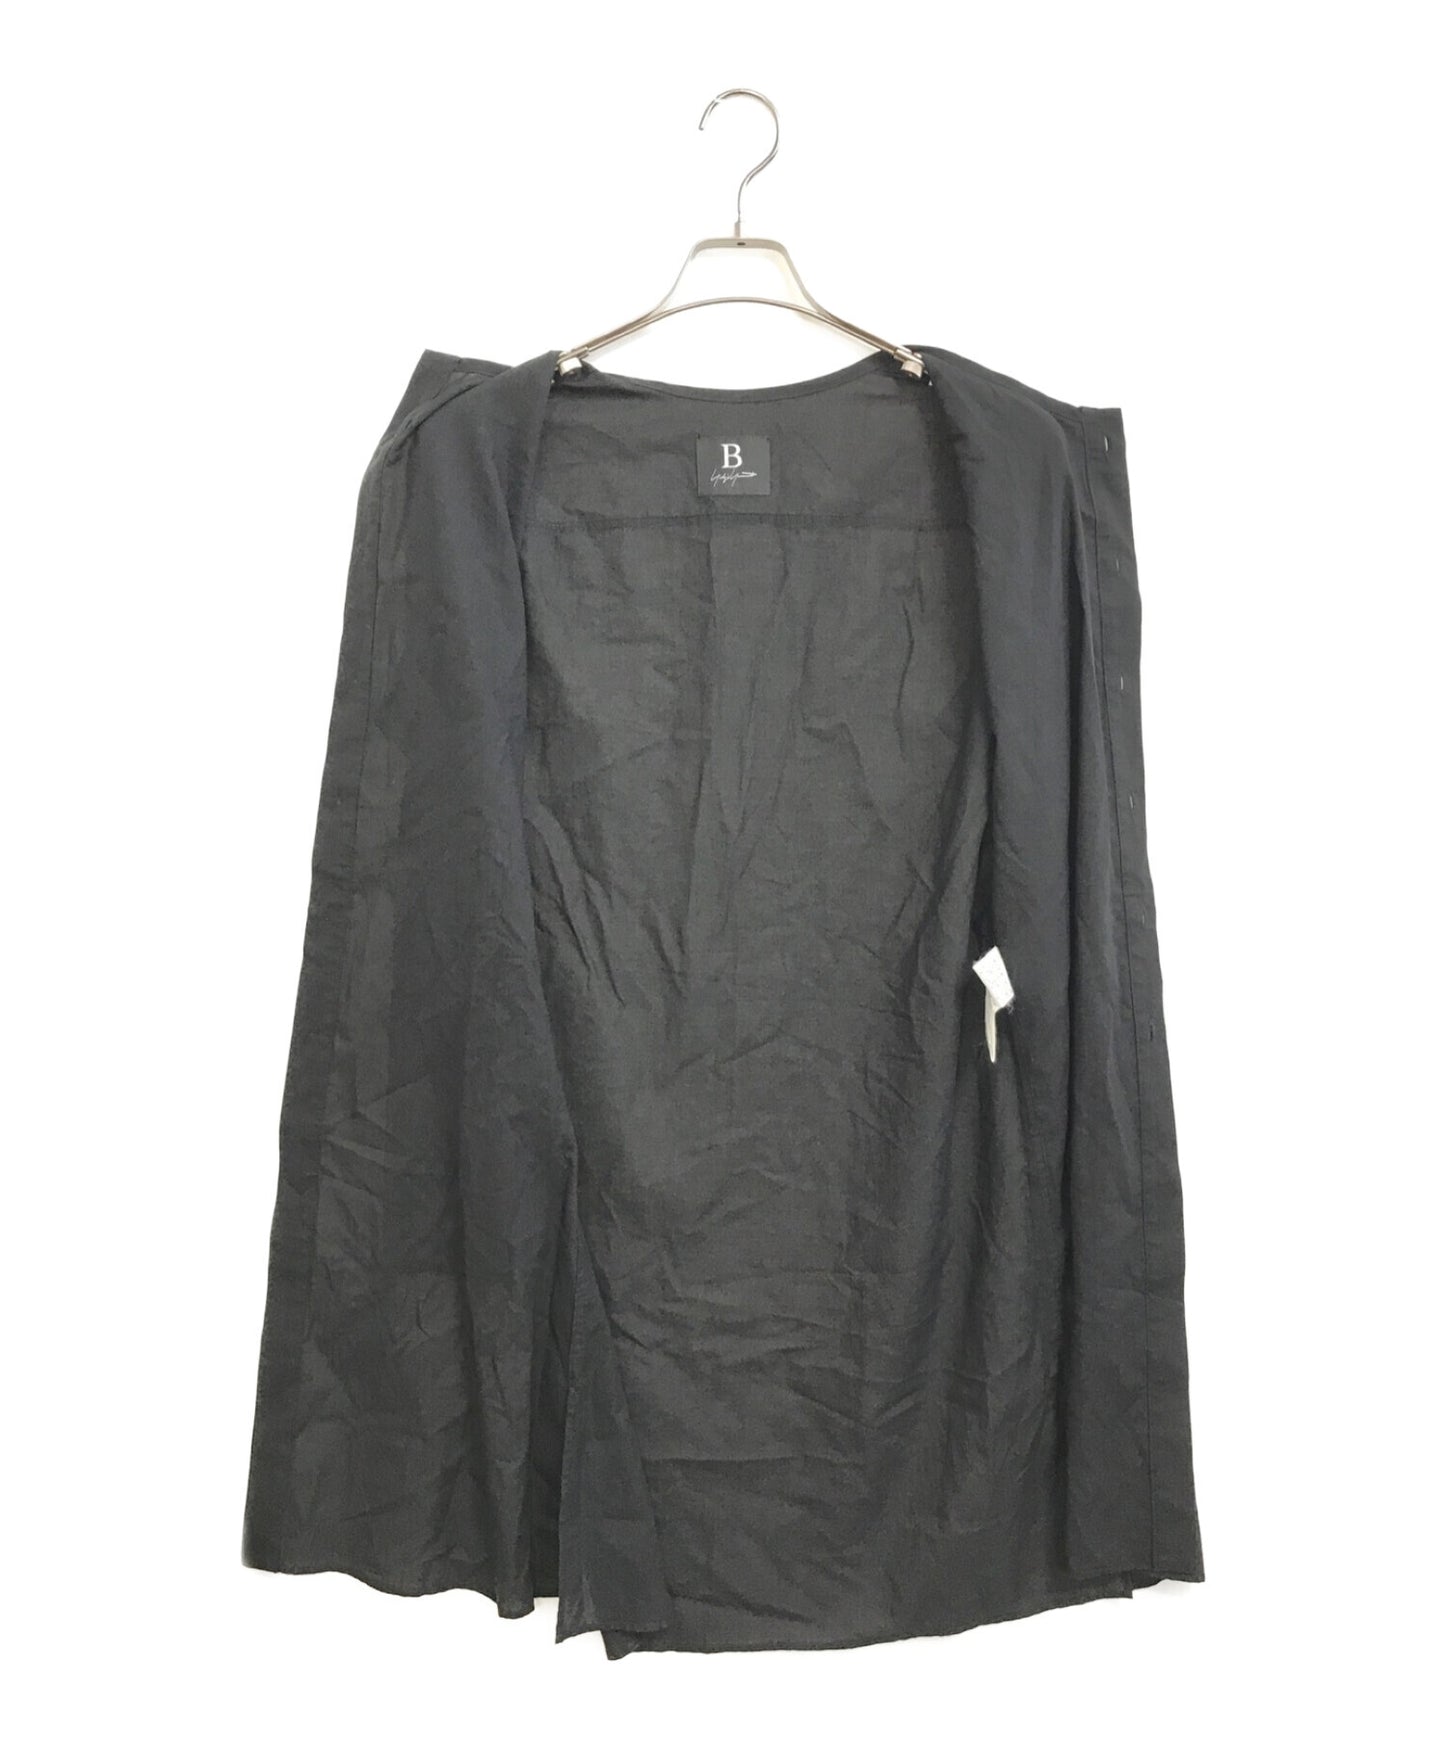 B Yohji Yamamoto 120/2 고독한, 고리가없는 커프 셔츠